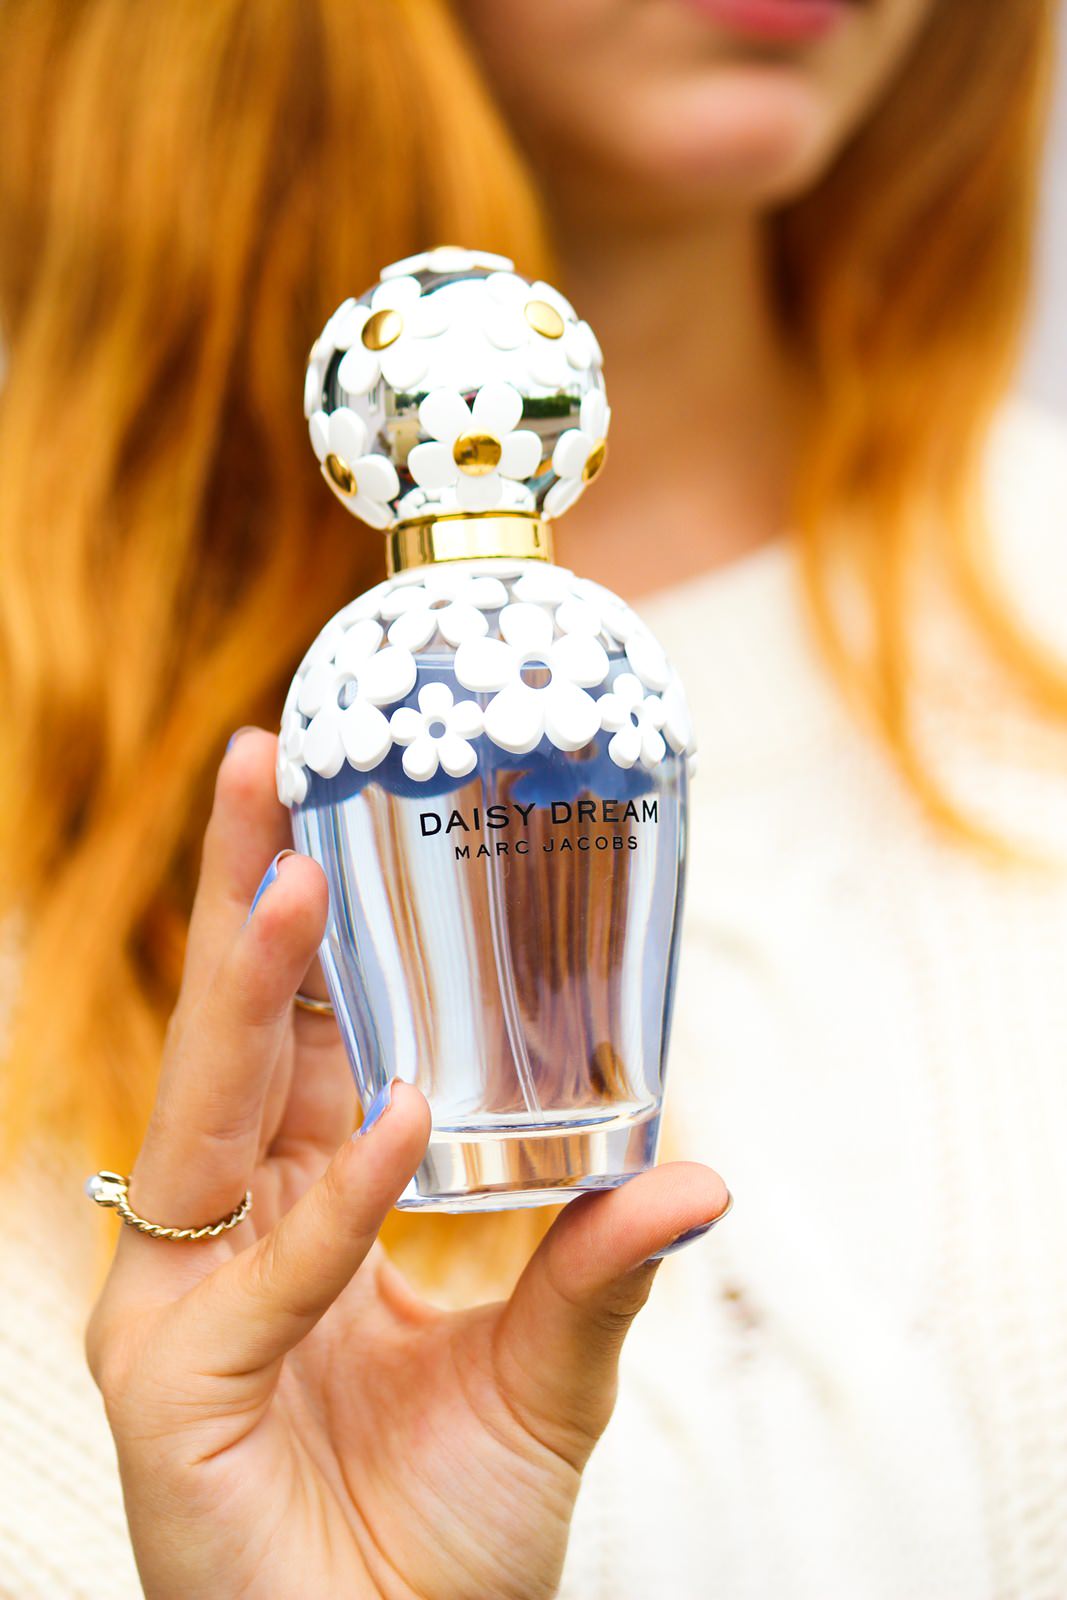 Parfum Review Marc Jacobs Daisy Dream Des Belles Choses Travel Style Blog